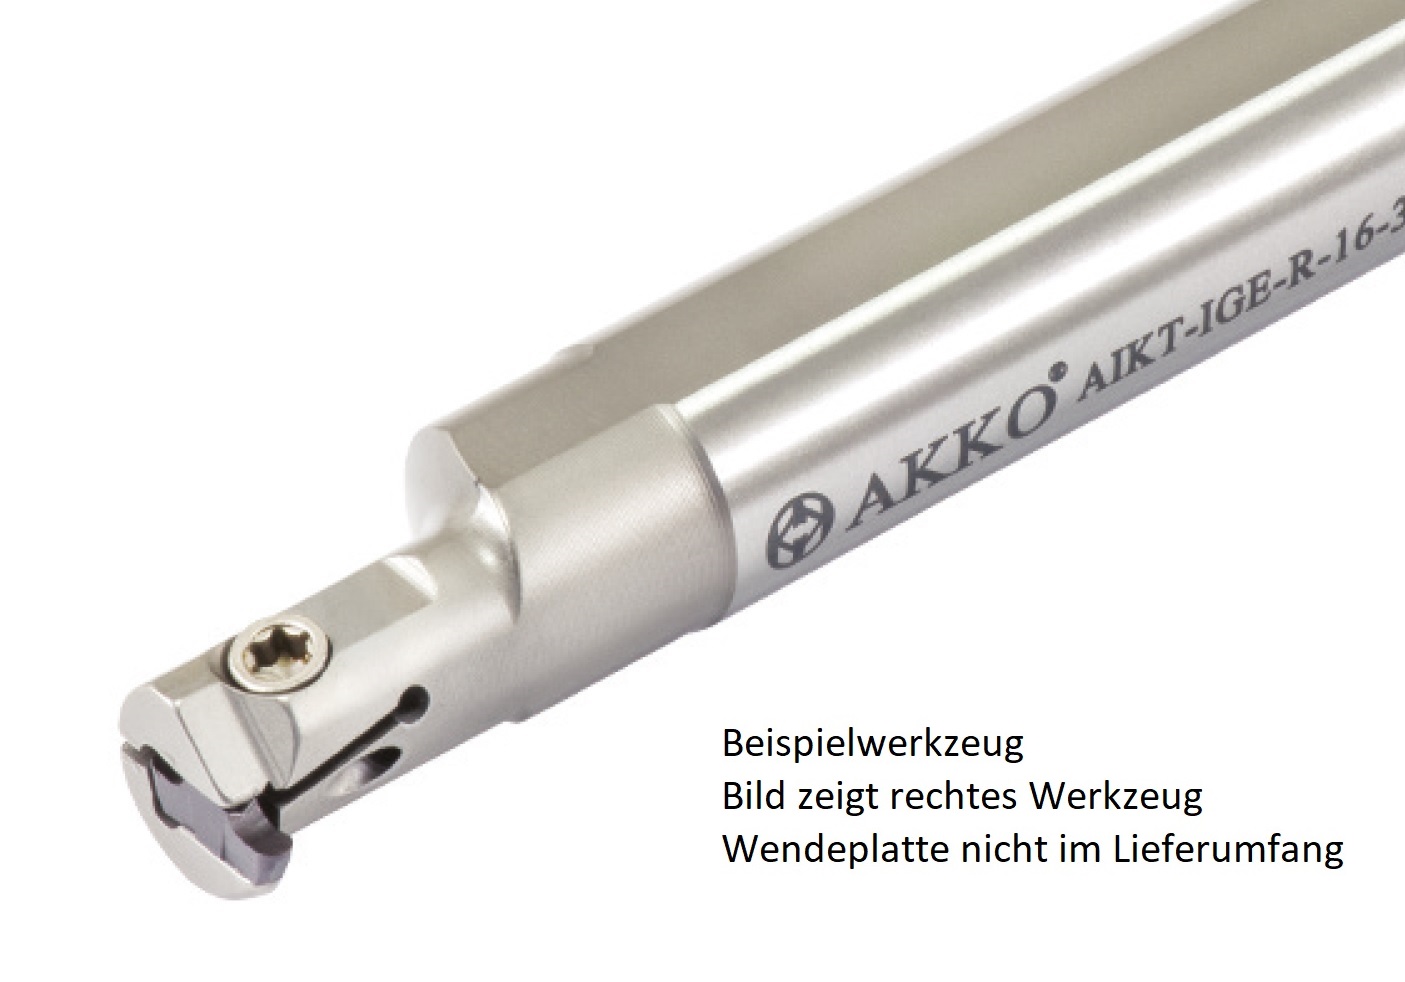 AKKO-Innen-Stechhalter, kompatibel mit Iscar-Stechplatte GEPI-2
Schaft-ø 10, mit Innenkühlung, links